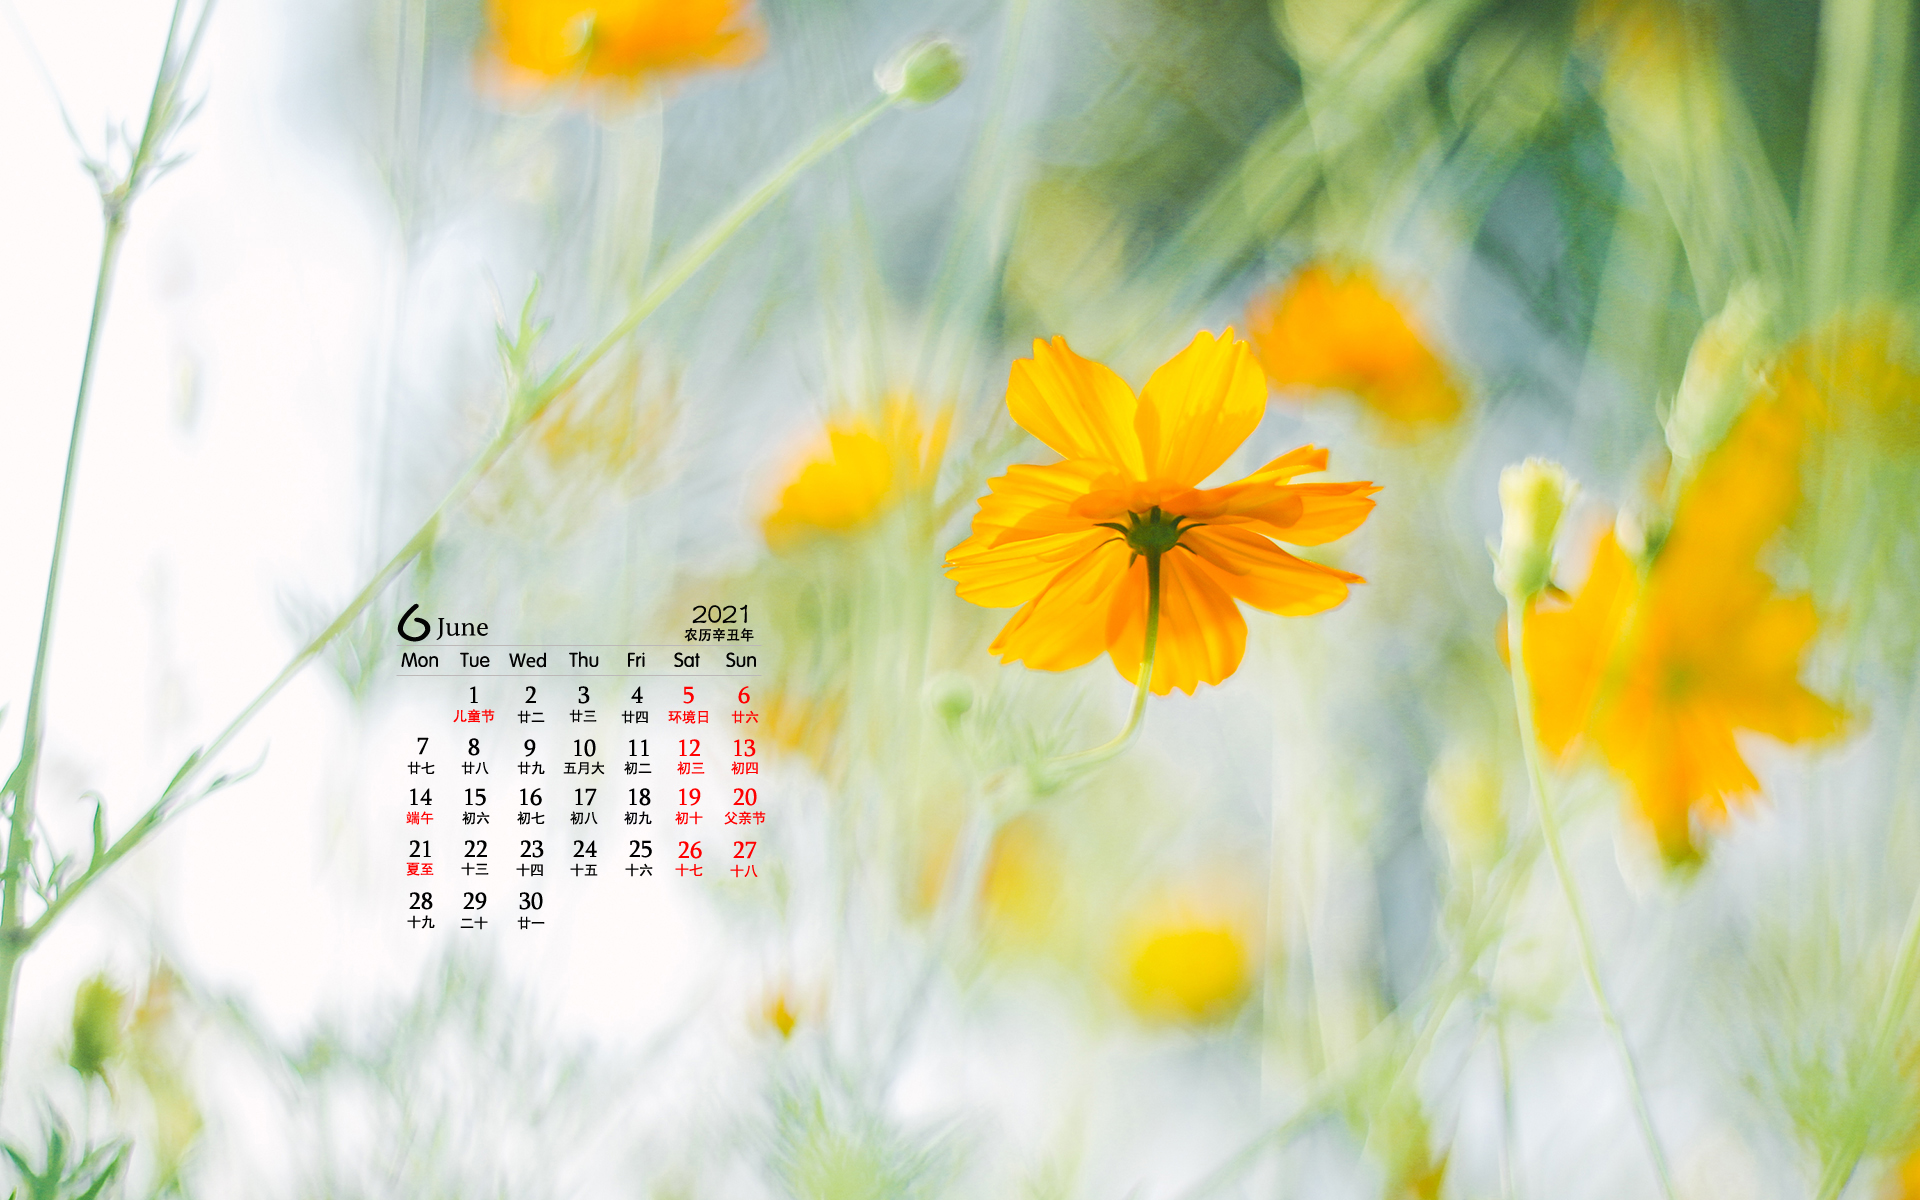 2021年6月黄色小花朵唯美桌面日历壁纸